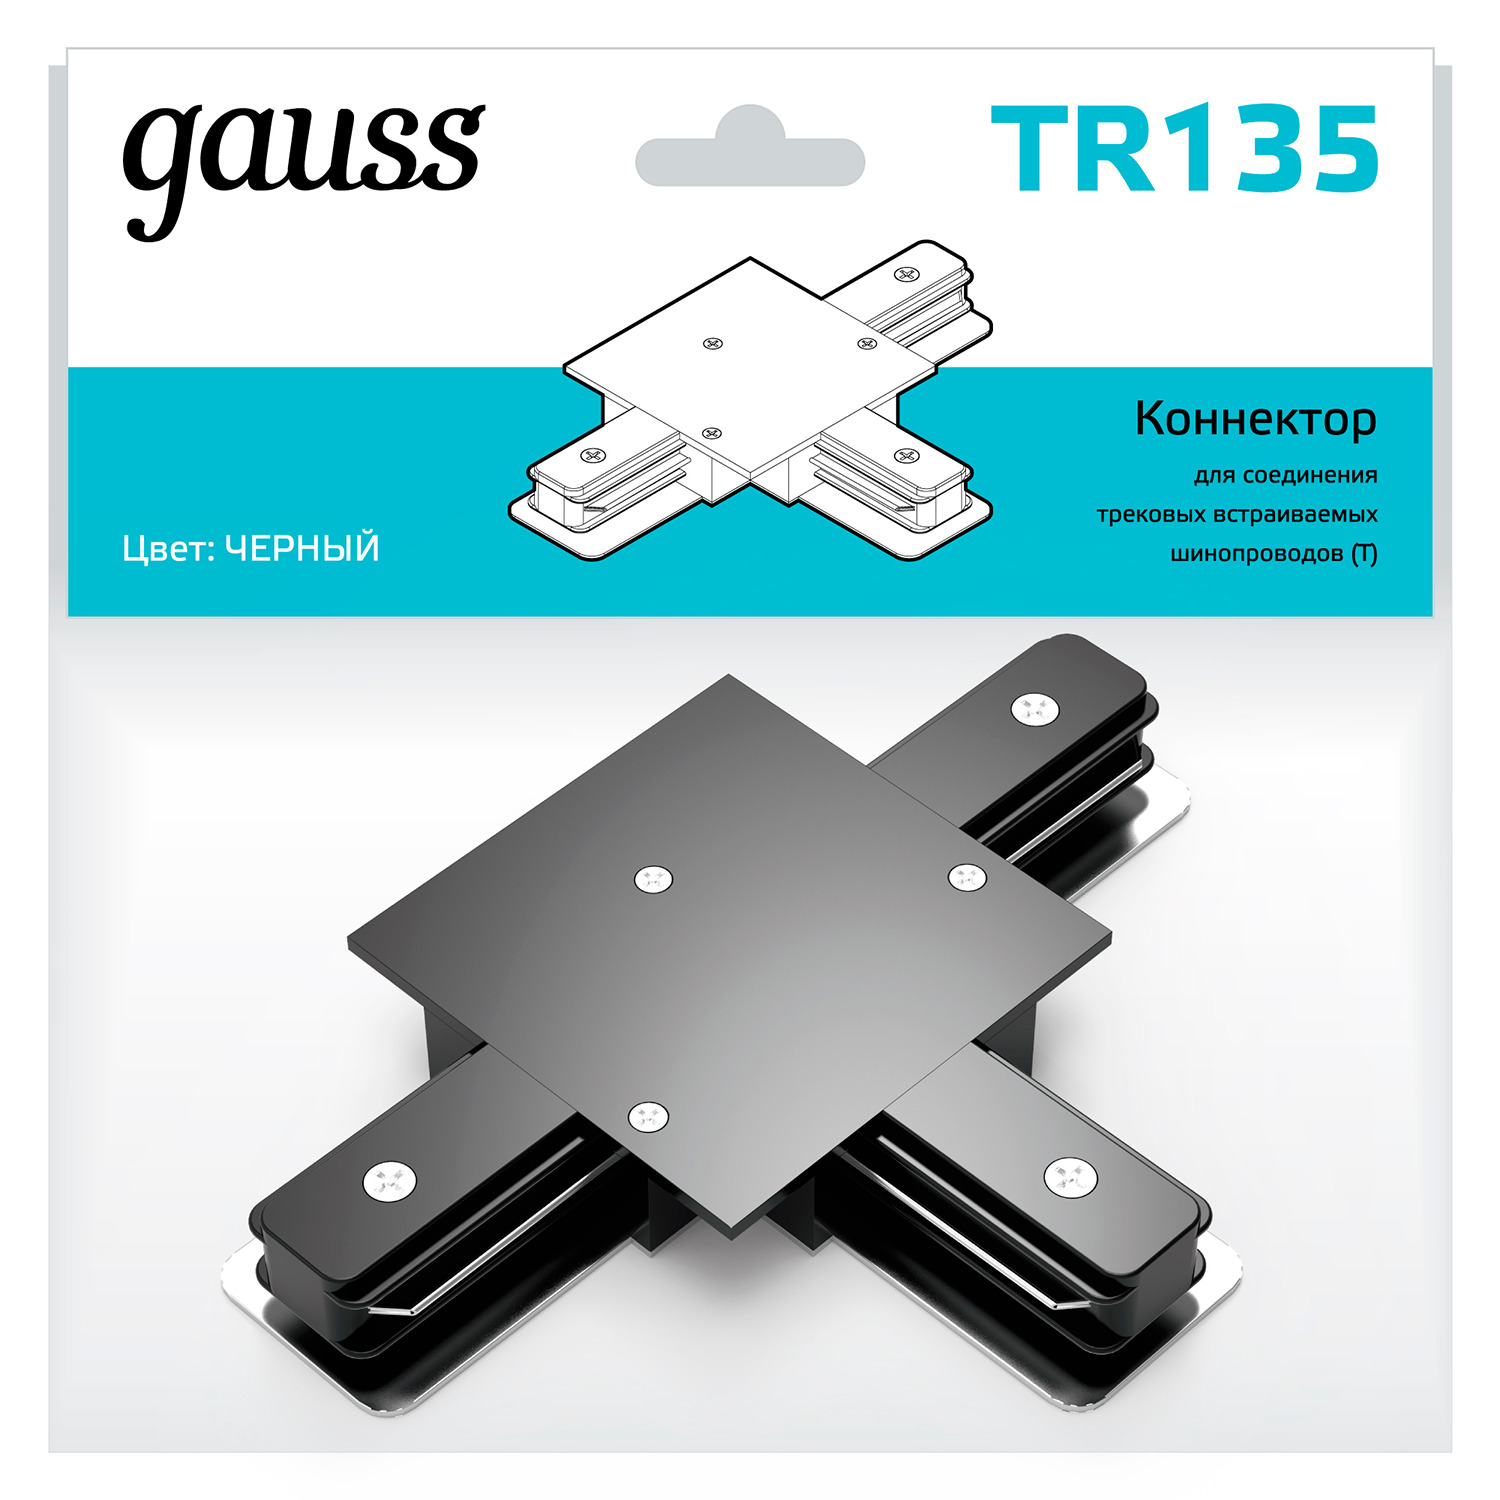 Коннектор Gauss для встраиваемых трековых шинопроводов (T) черный коннектор gauss для встраиваемых трековых шинопроводов гибкий i